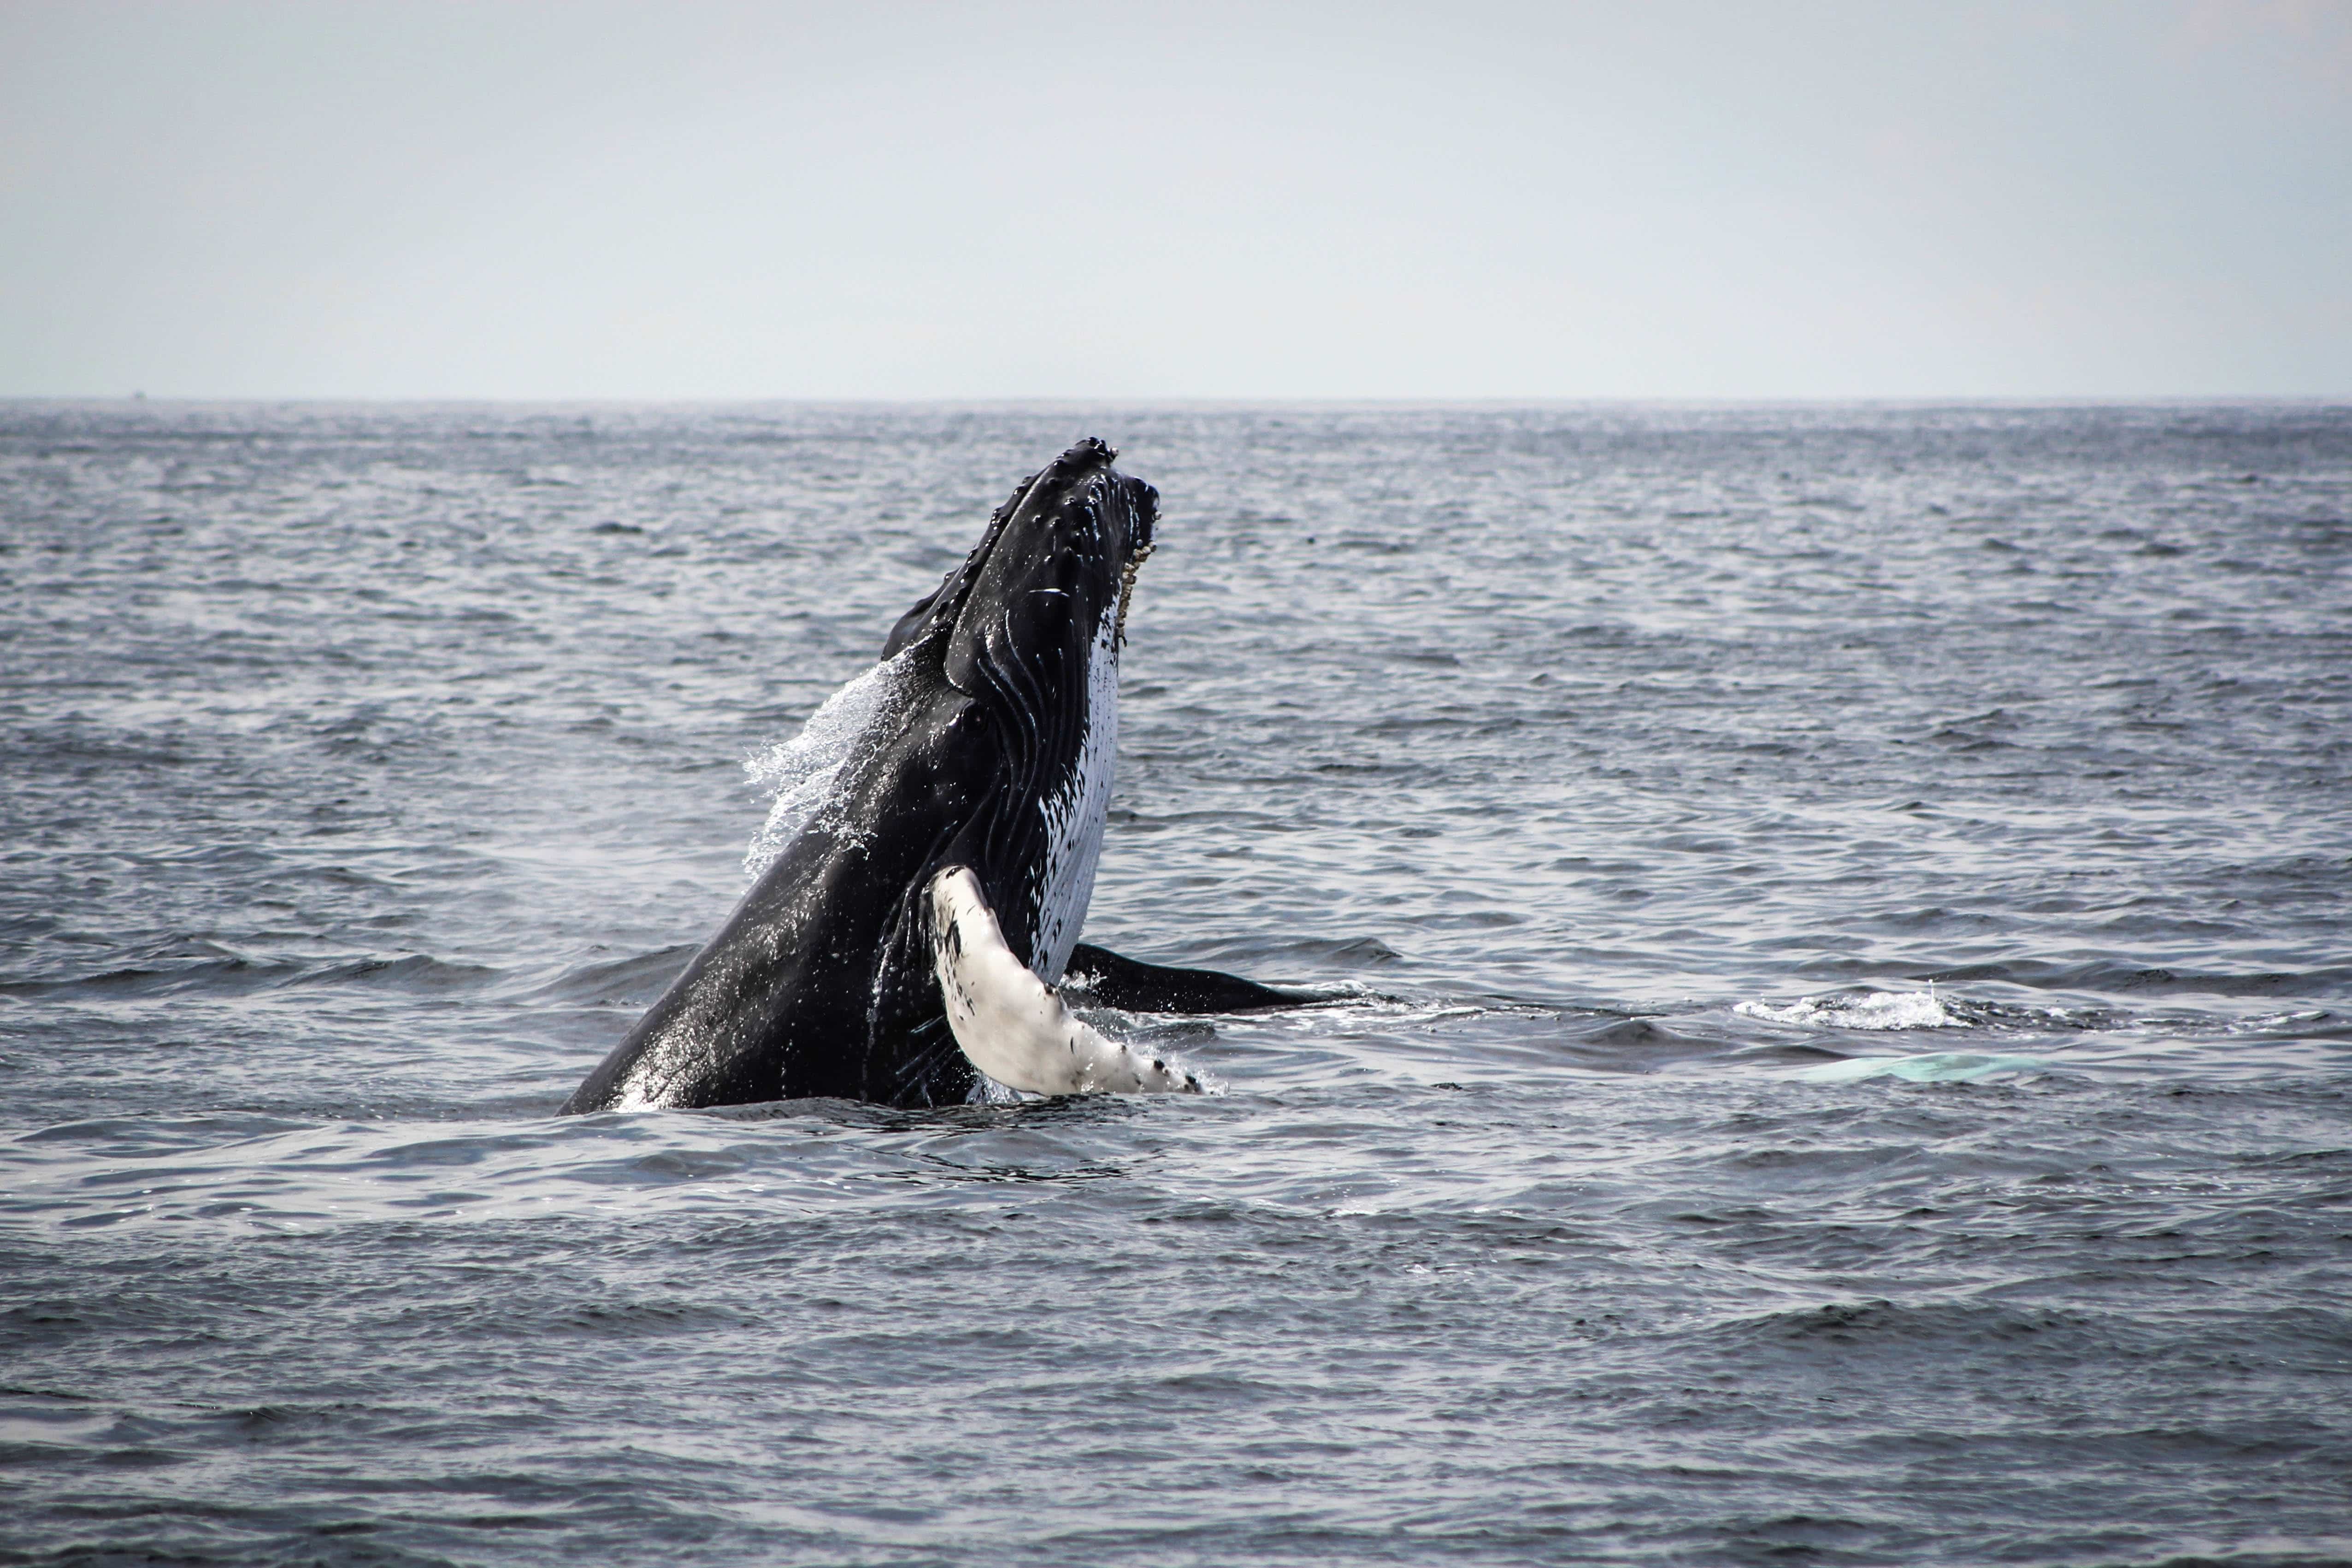 kaikoura, whale watch kaikoura, kaikoura whale watching, whale watching in kaikoura, kaikoura road, kaikoura whale watch, whale watching boat or plane?